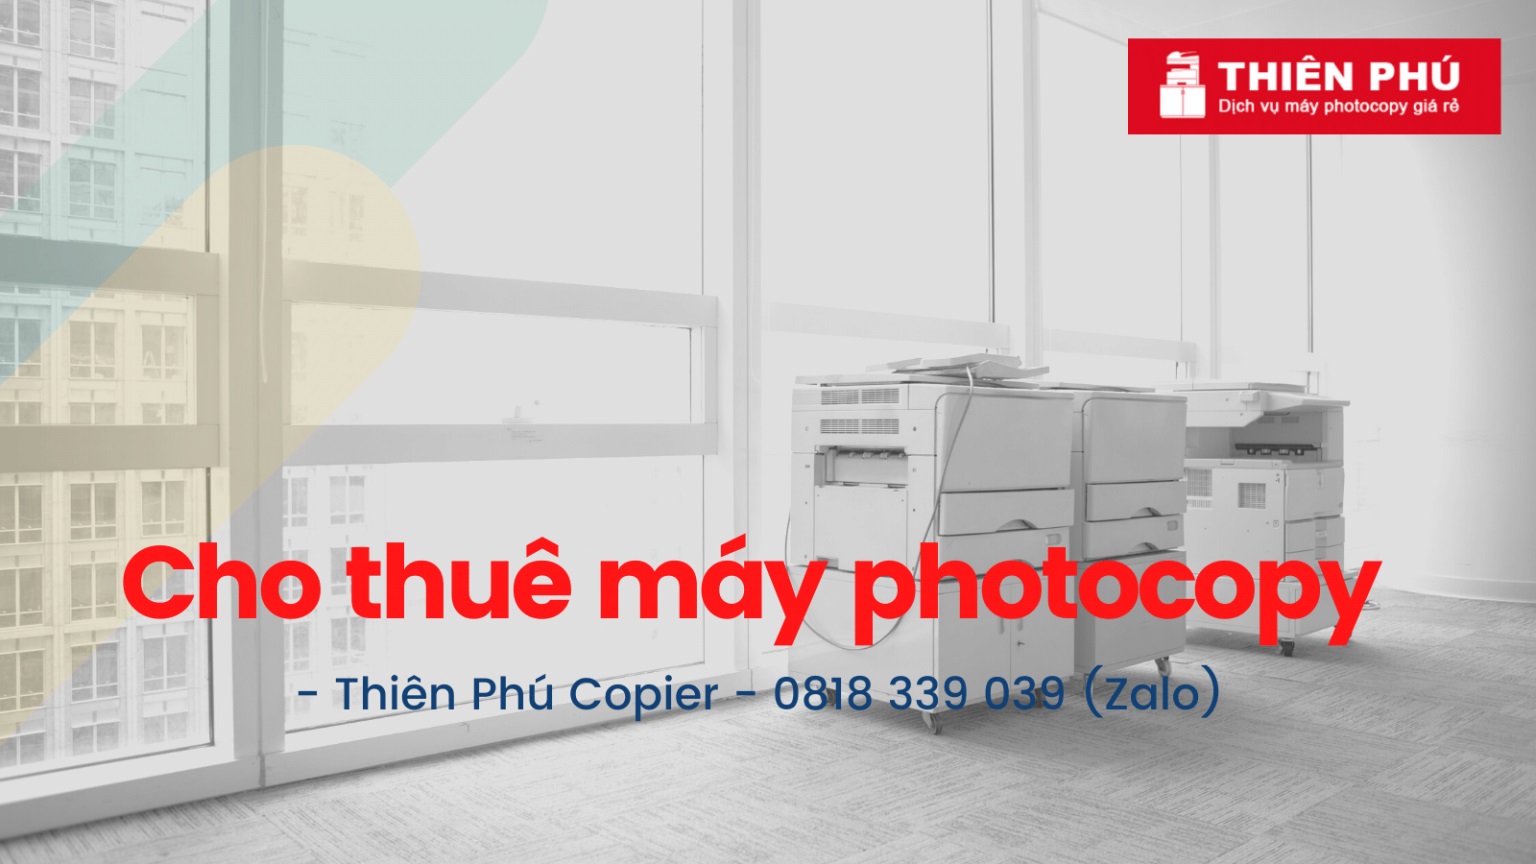 Các dòng máy Photocopy đang dược cho thuê tại Thiên Phú Copier